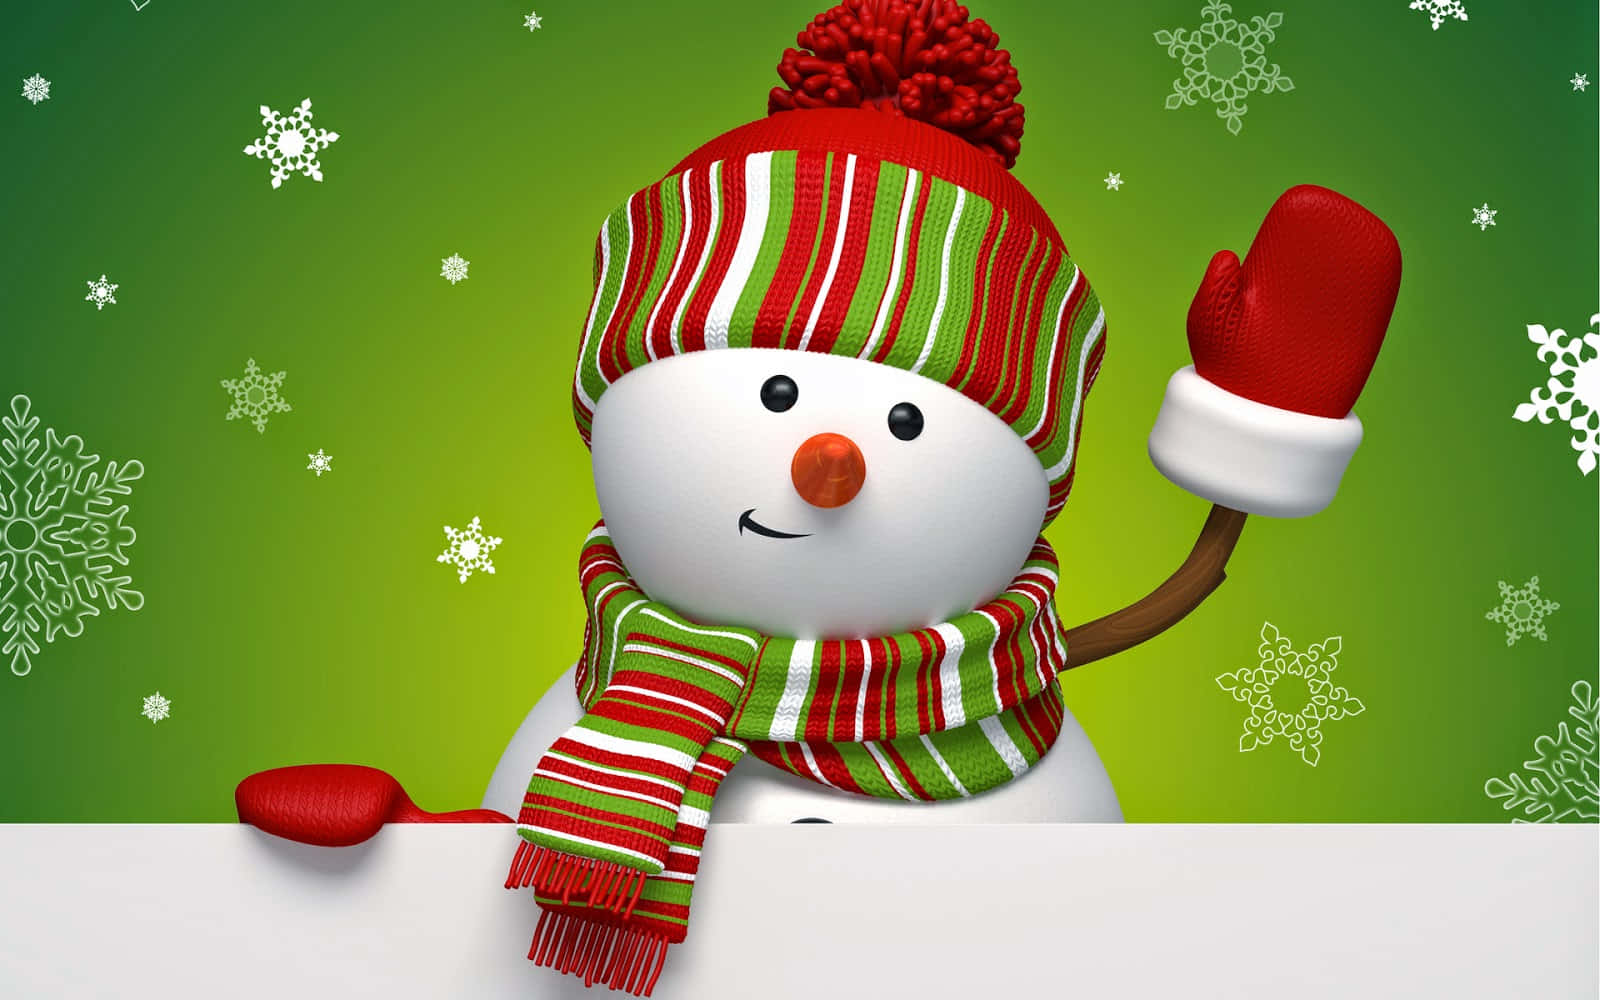 Imagende Un Muñeco De Nieve Animado De Navidad Agitando Con Un Sombrero De Santa